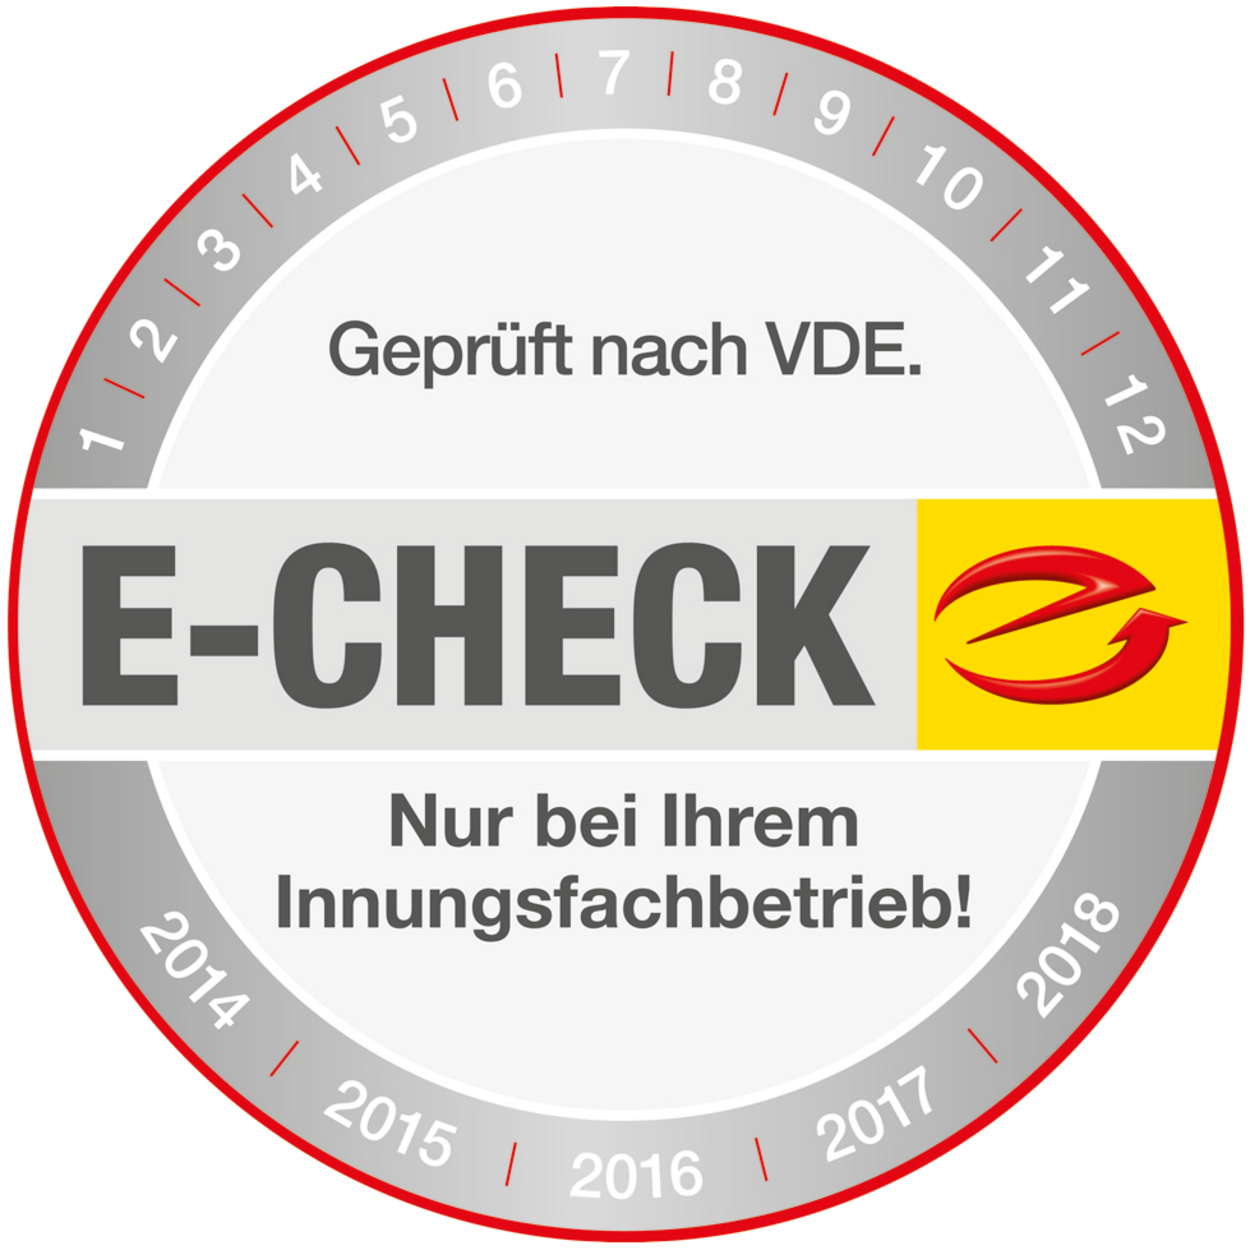 Der E-Check bei Elektro Stier GmbH in Frankfurt